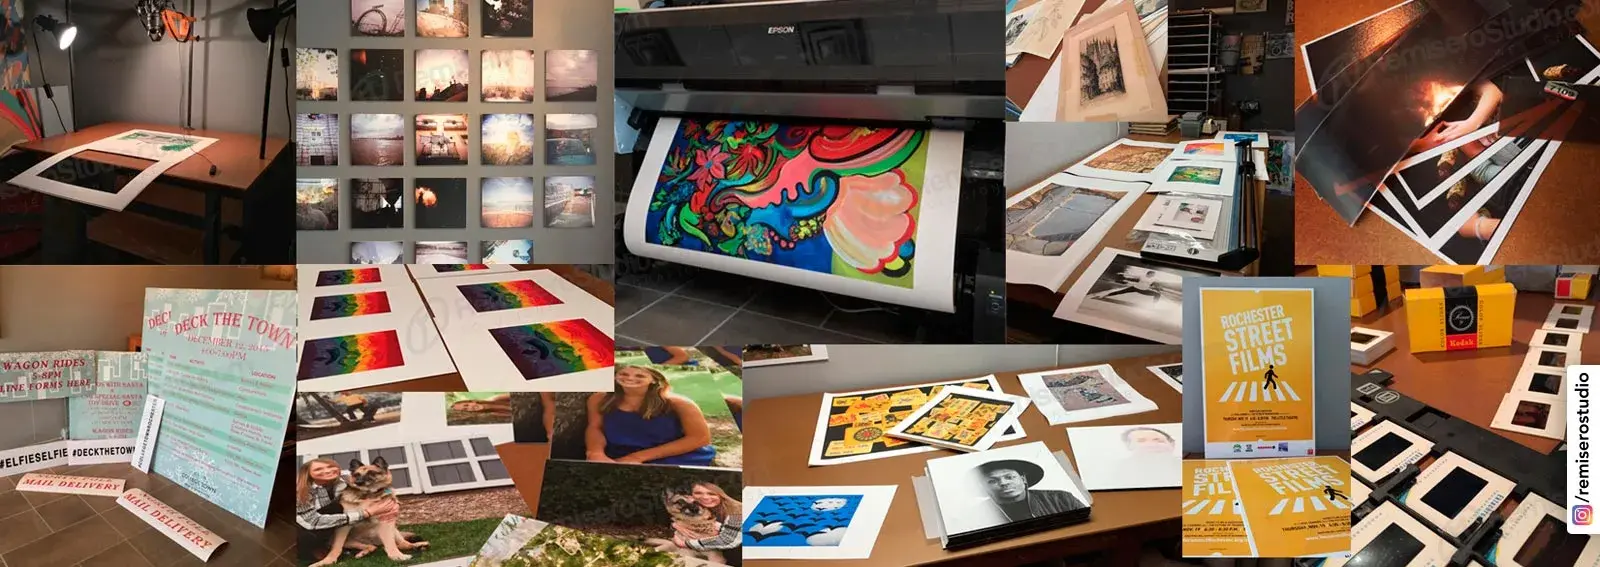 Impresión Inkjet Ecosolvente en Lima, Perú: Impresión en Papel Fotográfico, Papel Trisol SkyLigth, Backlit Film, Lienzo canvas, Tamaños A2, A1, A0 hasta 1.50 mt ancho